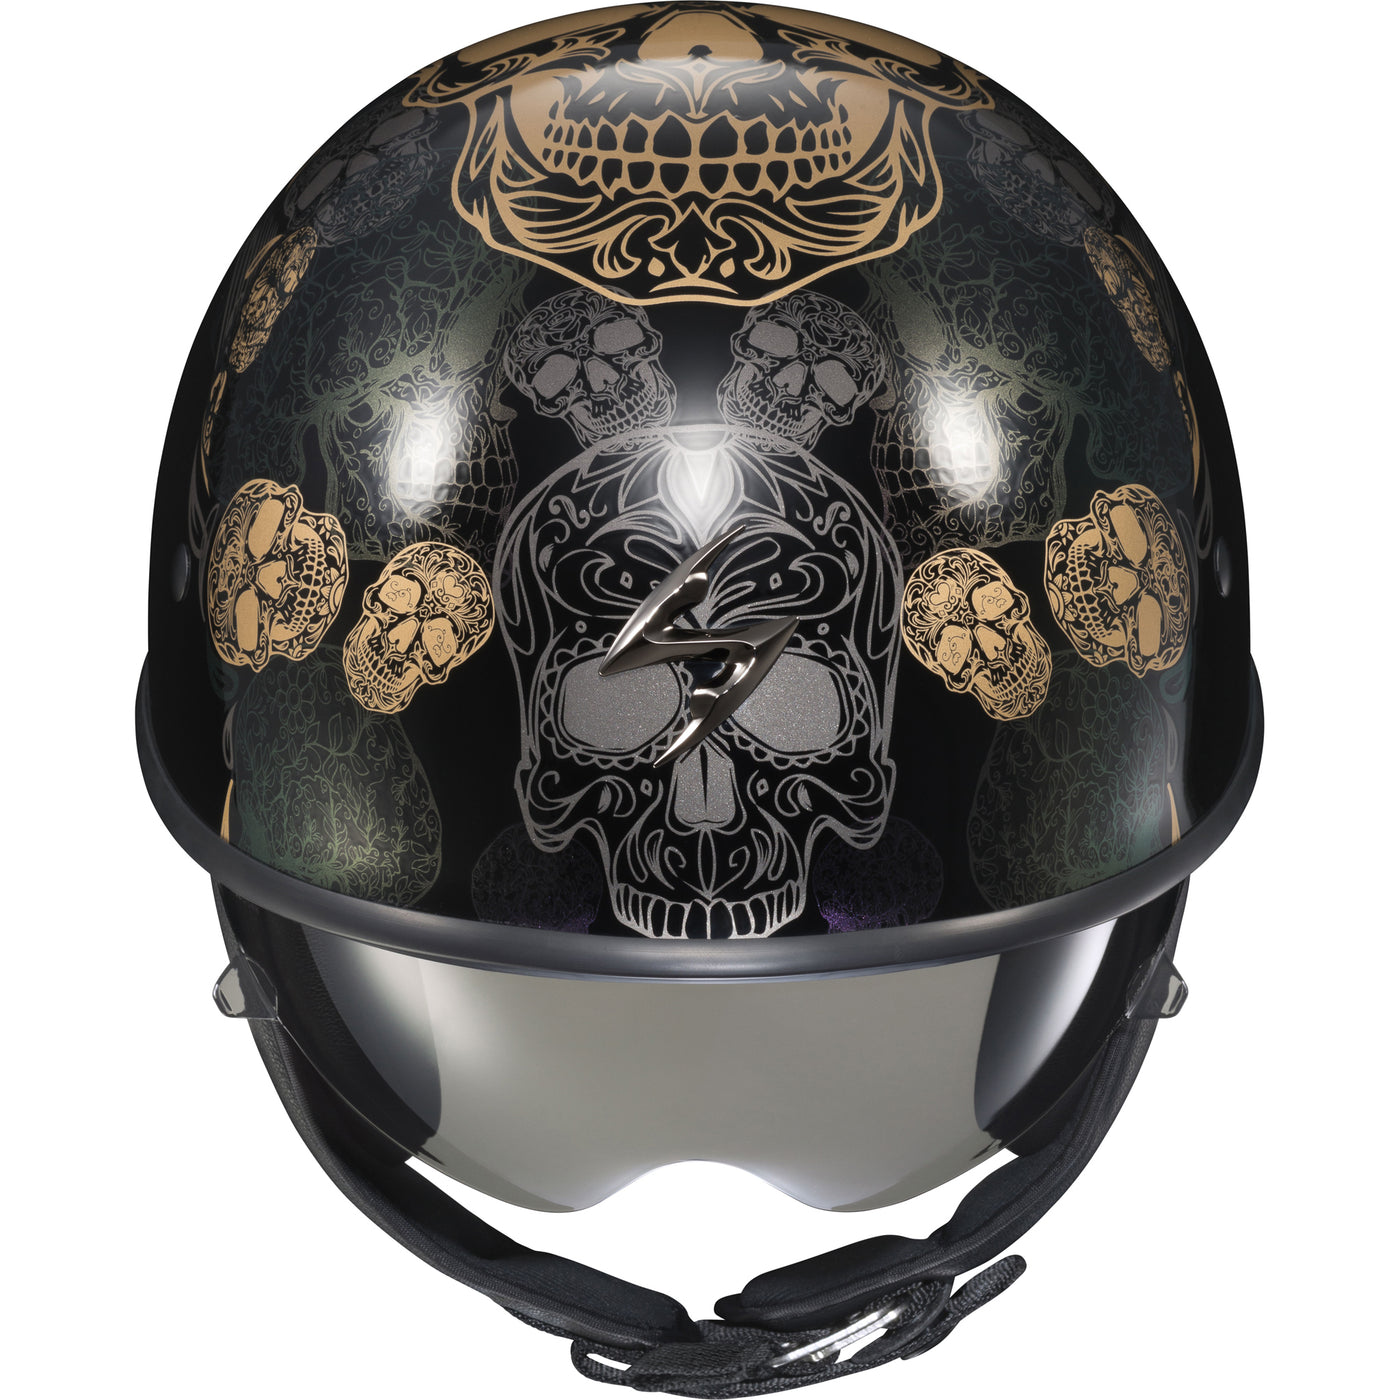 SCORPION EXO EXO-C90 Open-Face Kalavera Helmet